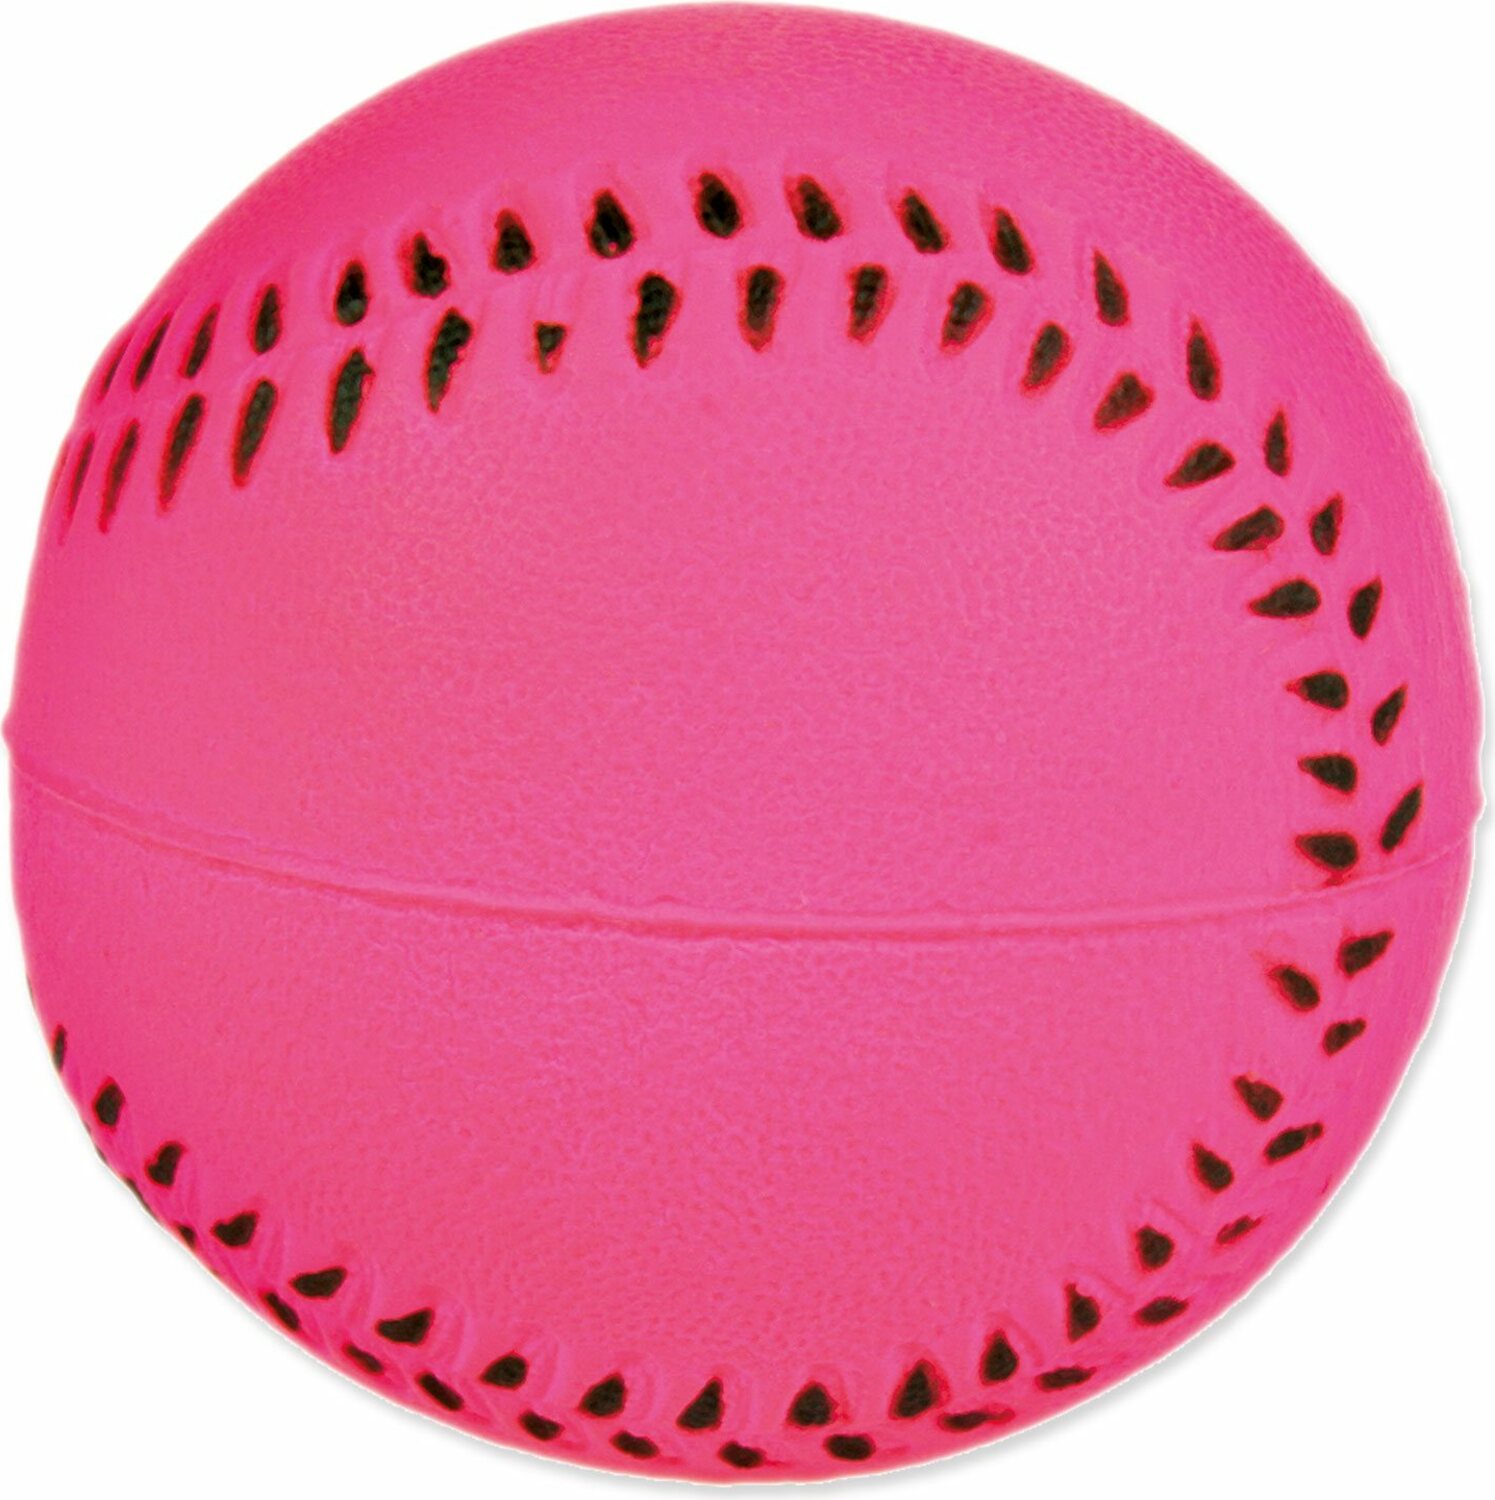 Hračka Trixie míč neon 6cm